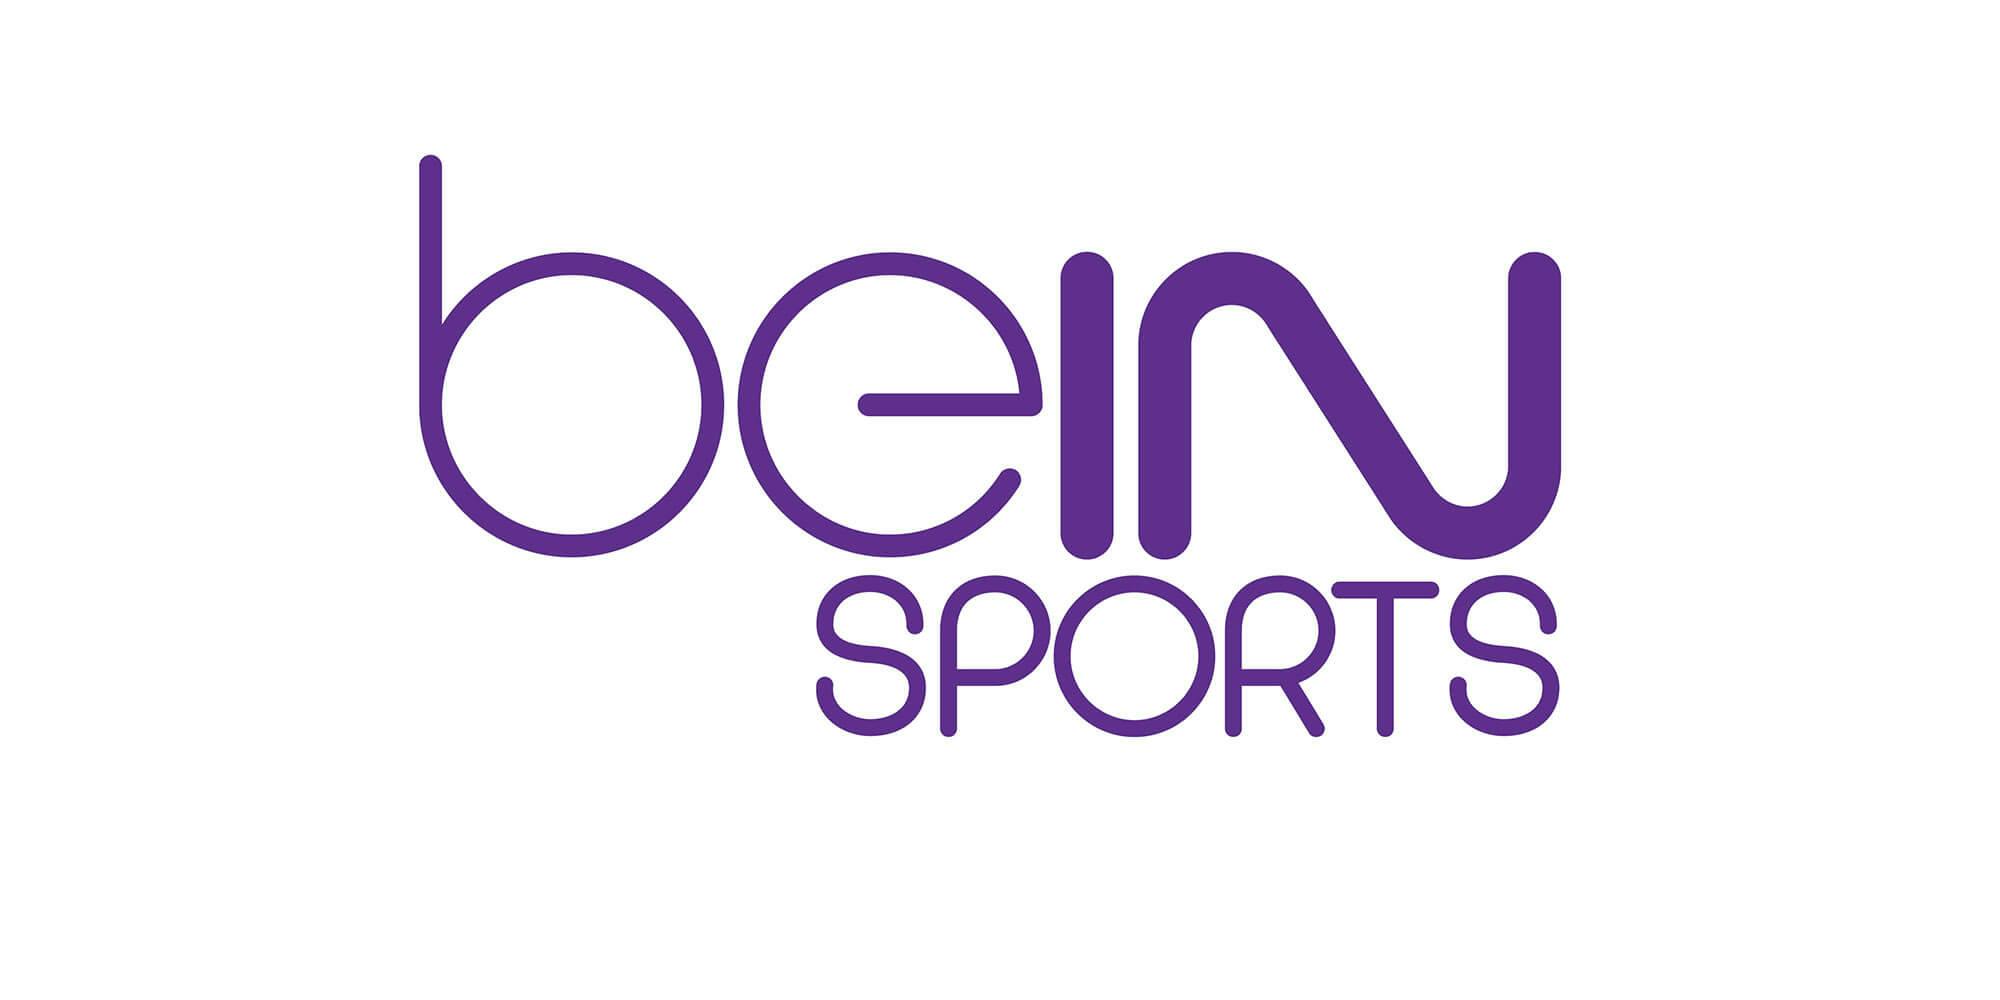 Stream bein sports. Bein. Bein лого. Bein Sports логотип. Лого Беин Спортс.